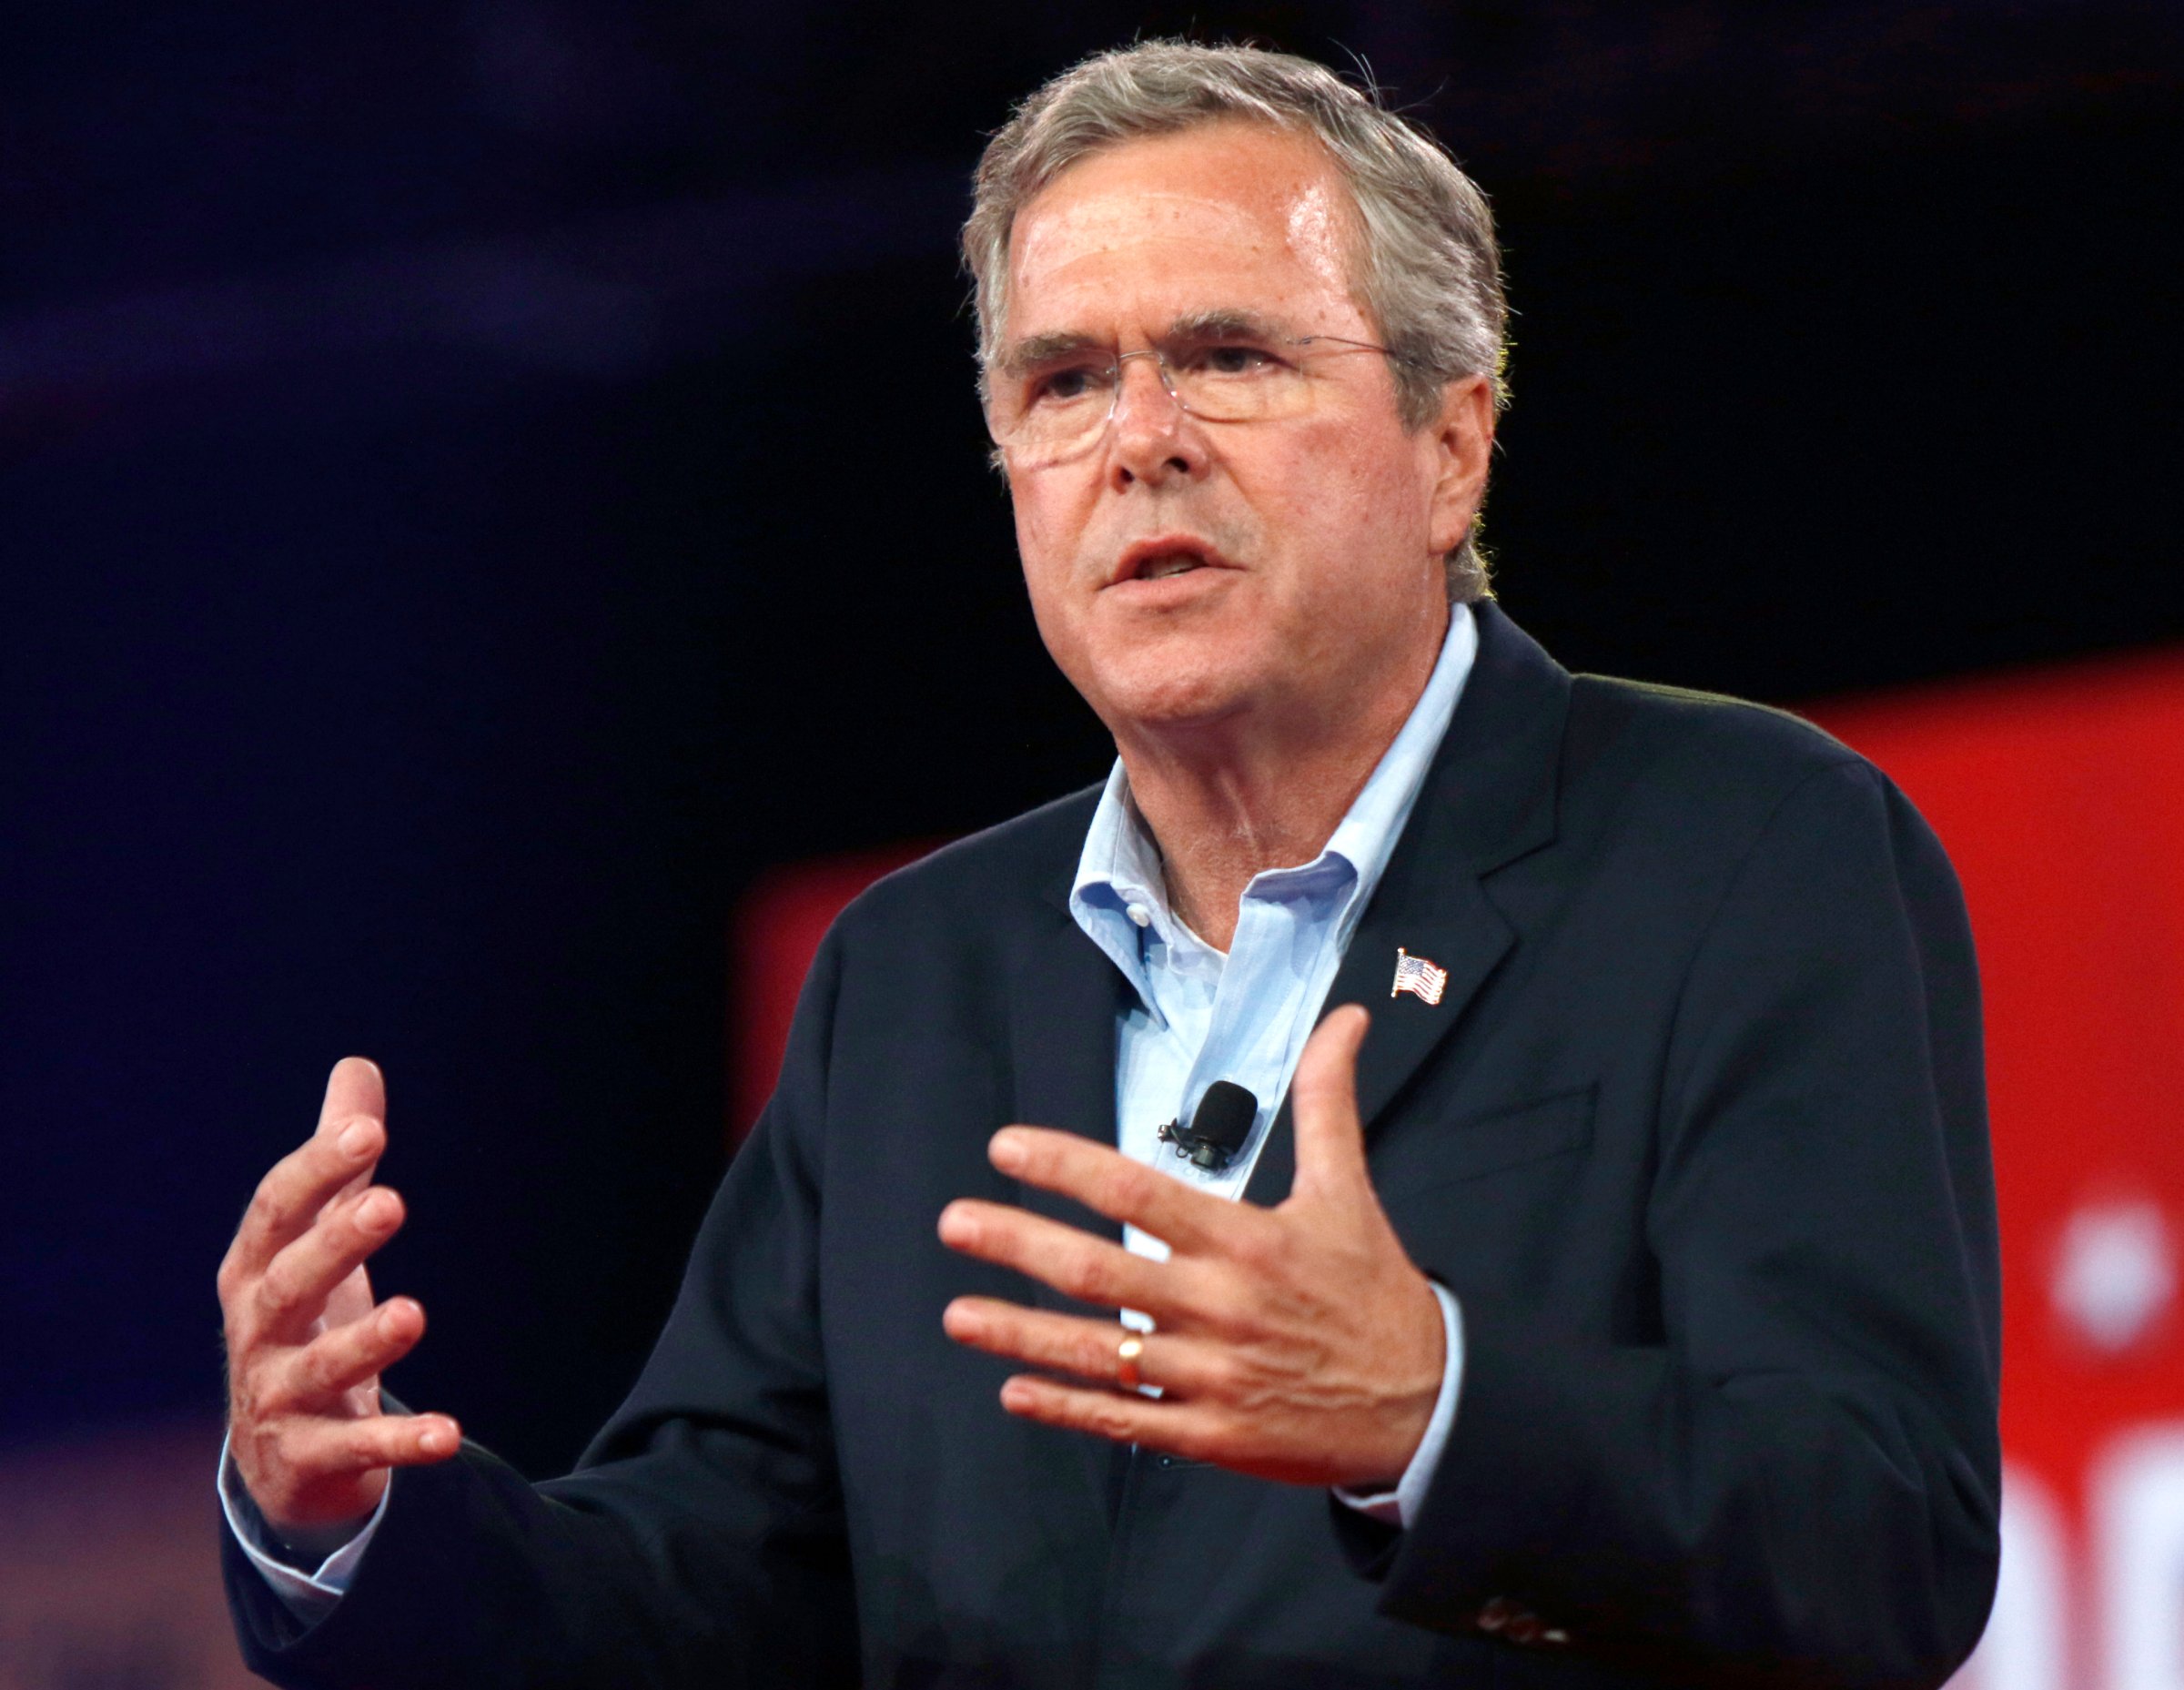 Jeb Bush Republican presidential candidate